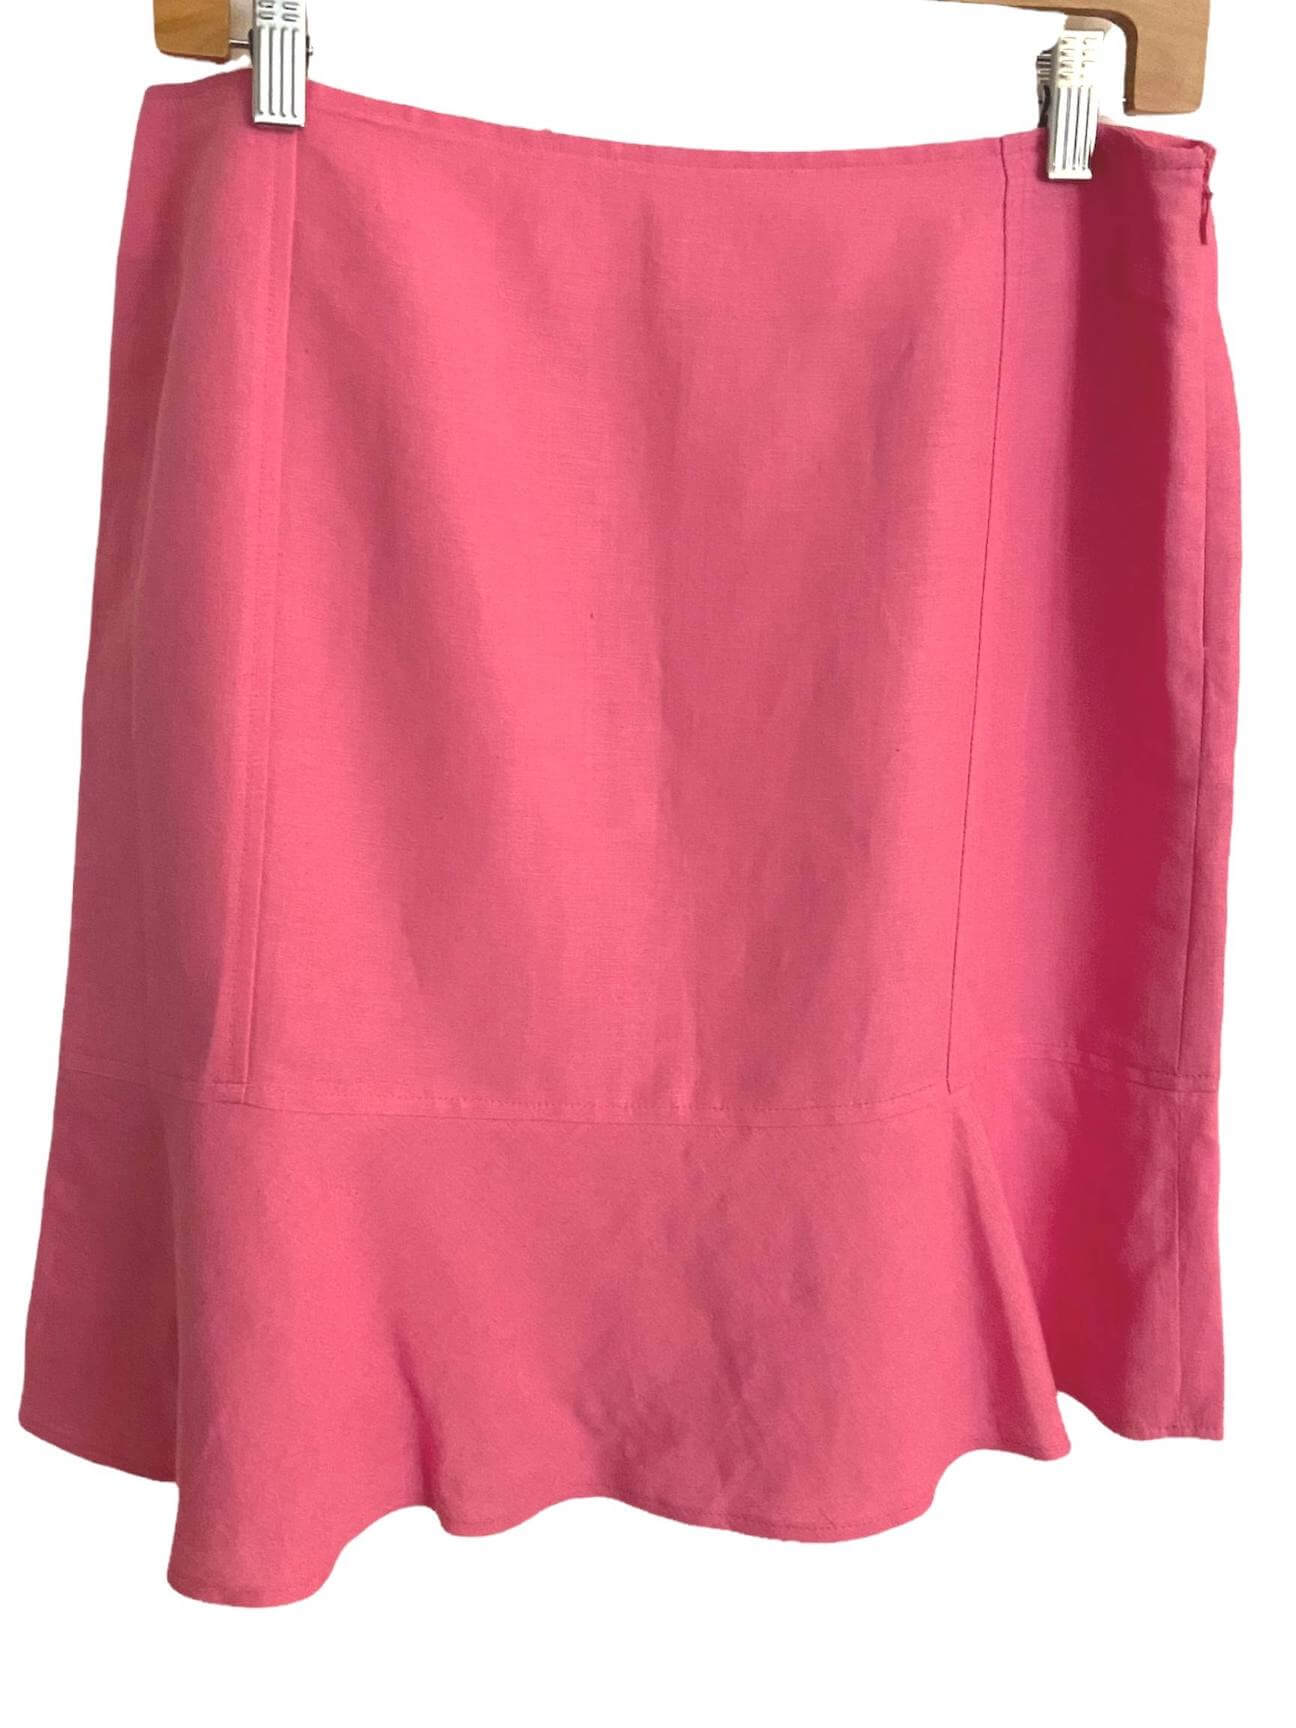 Light Summer CASUAL CORNER ANNEX pink linen ruffle skirt